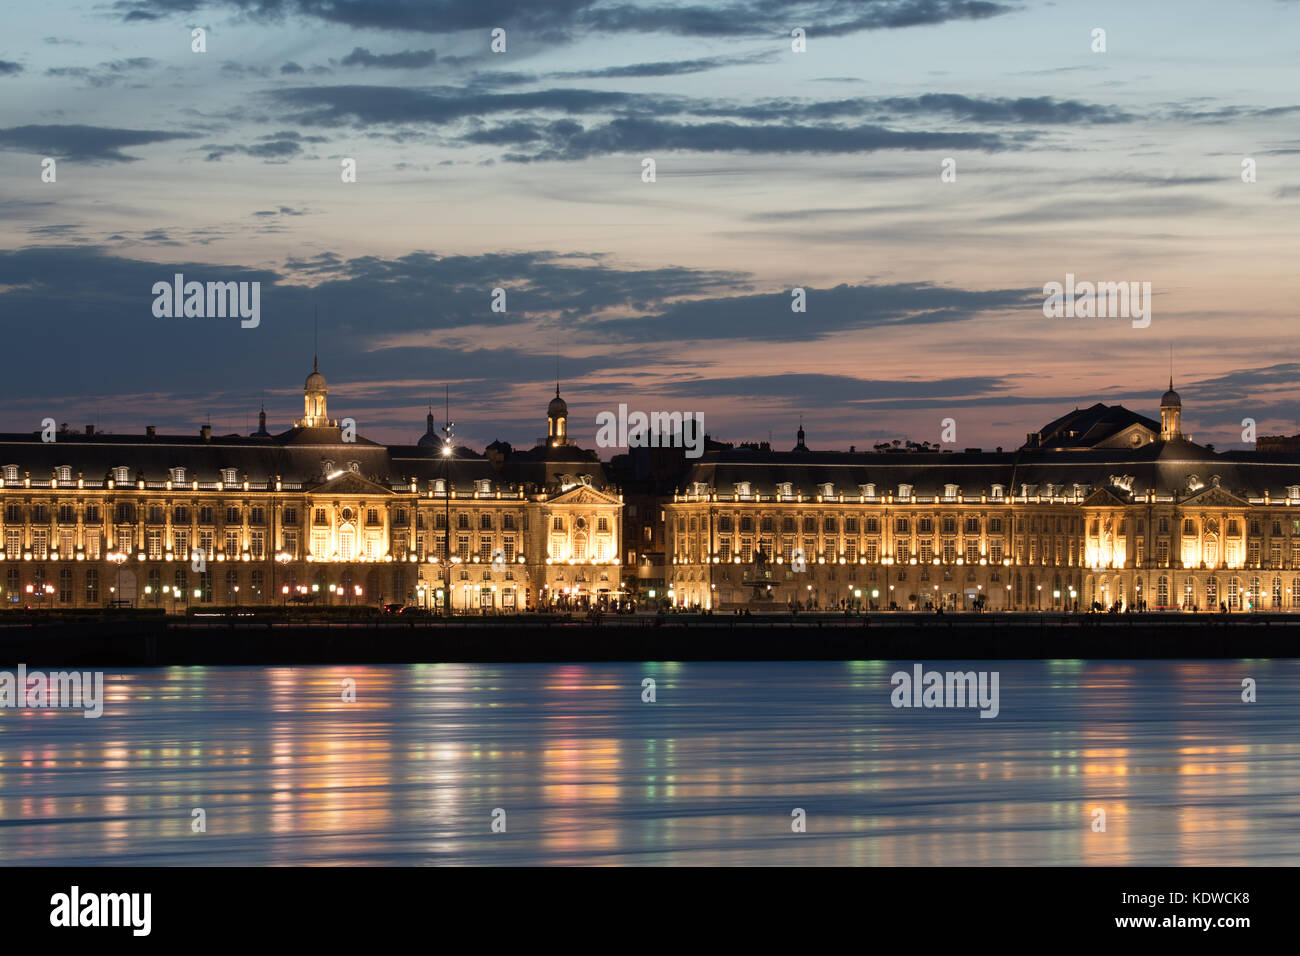 The Place de la Bourse & the River Garonne at dusk, Bordeaux, Aquitaine, France Stock Photo